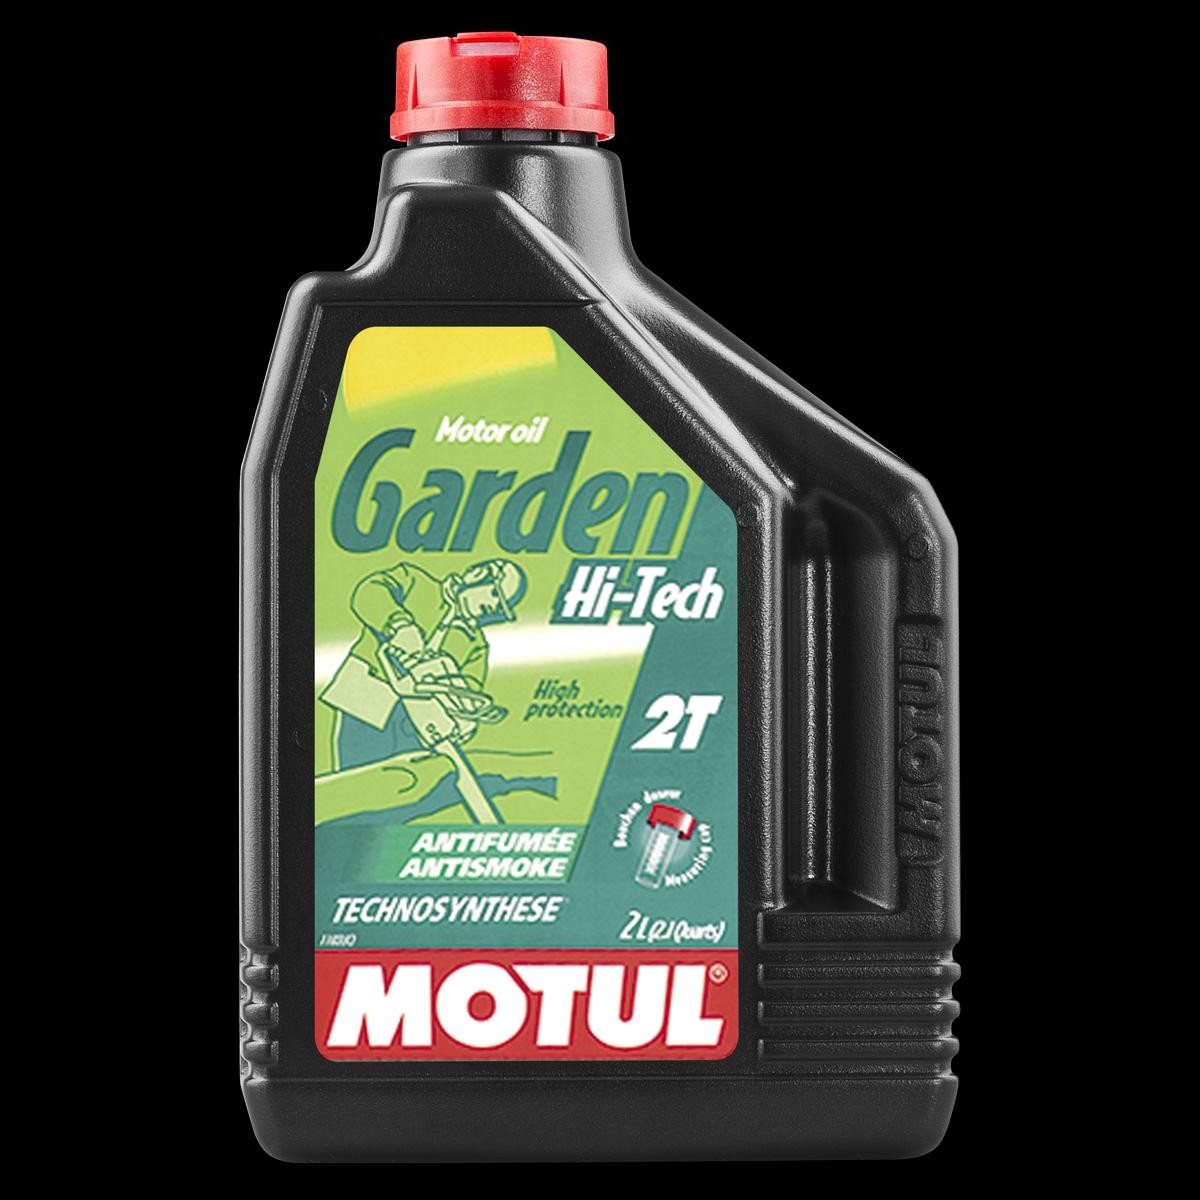 Motorrad MOTUL Garden, 2T Hi-Tech 2l Motoröl 101307 günstig kaufen